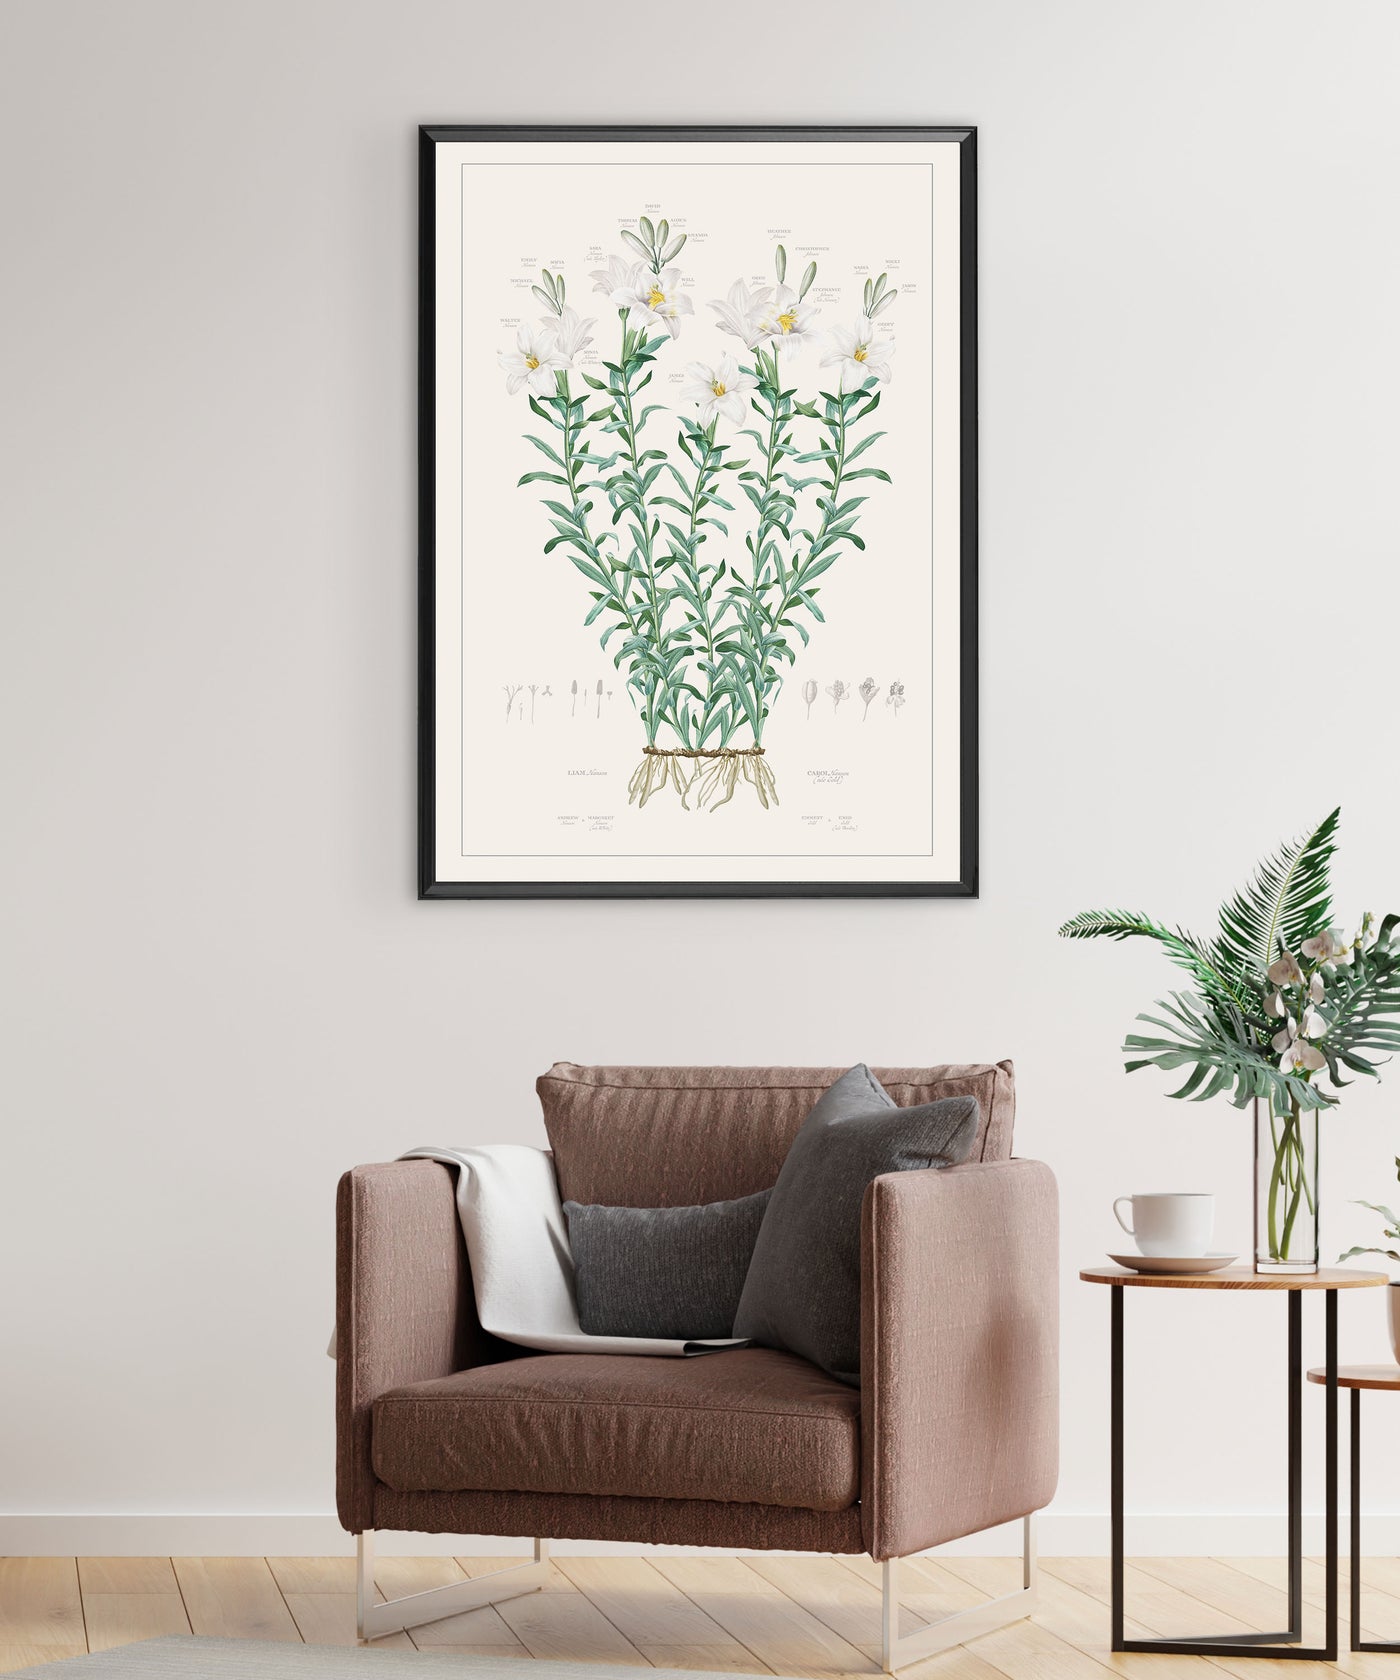 Large Lily Family Botanic on White Background Lifestyle image 20 x28 size